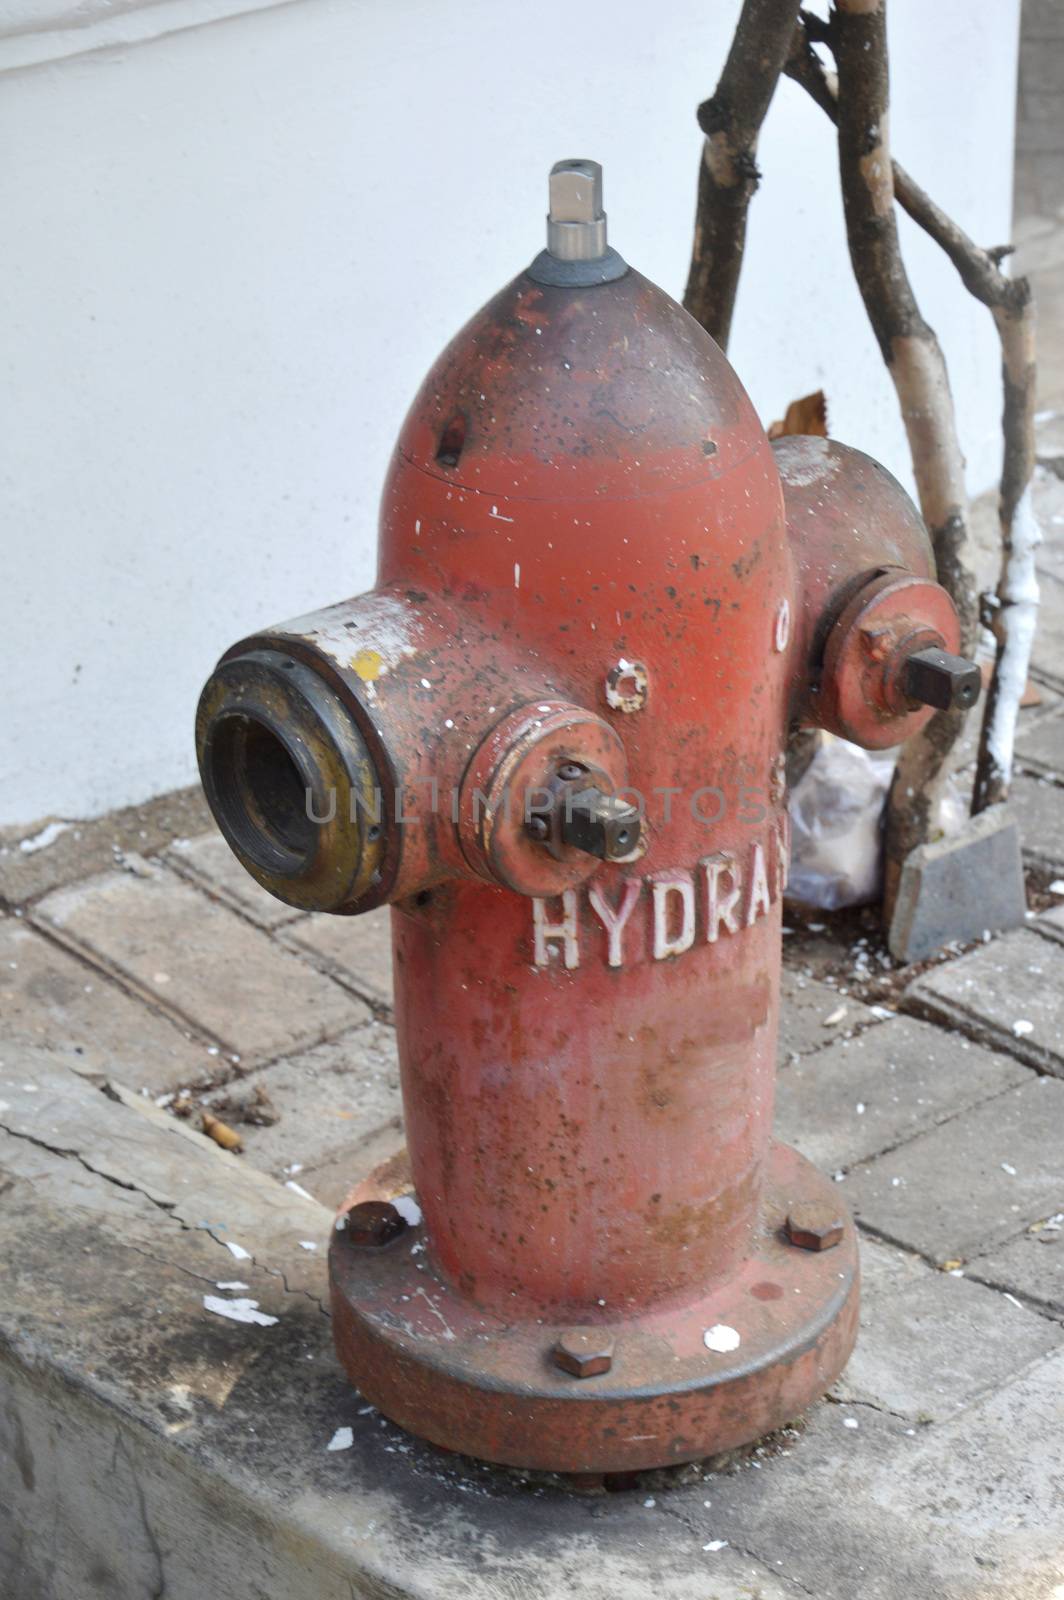 hydrant by antonihalim